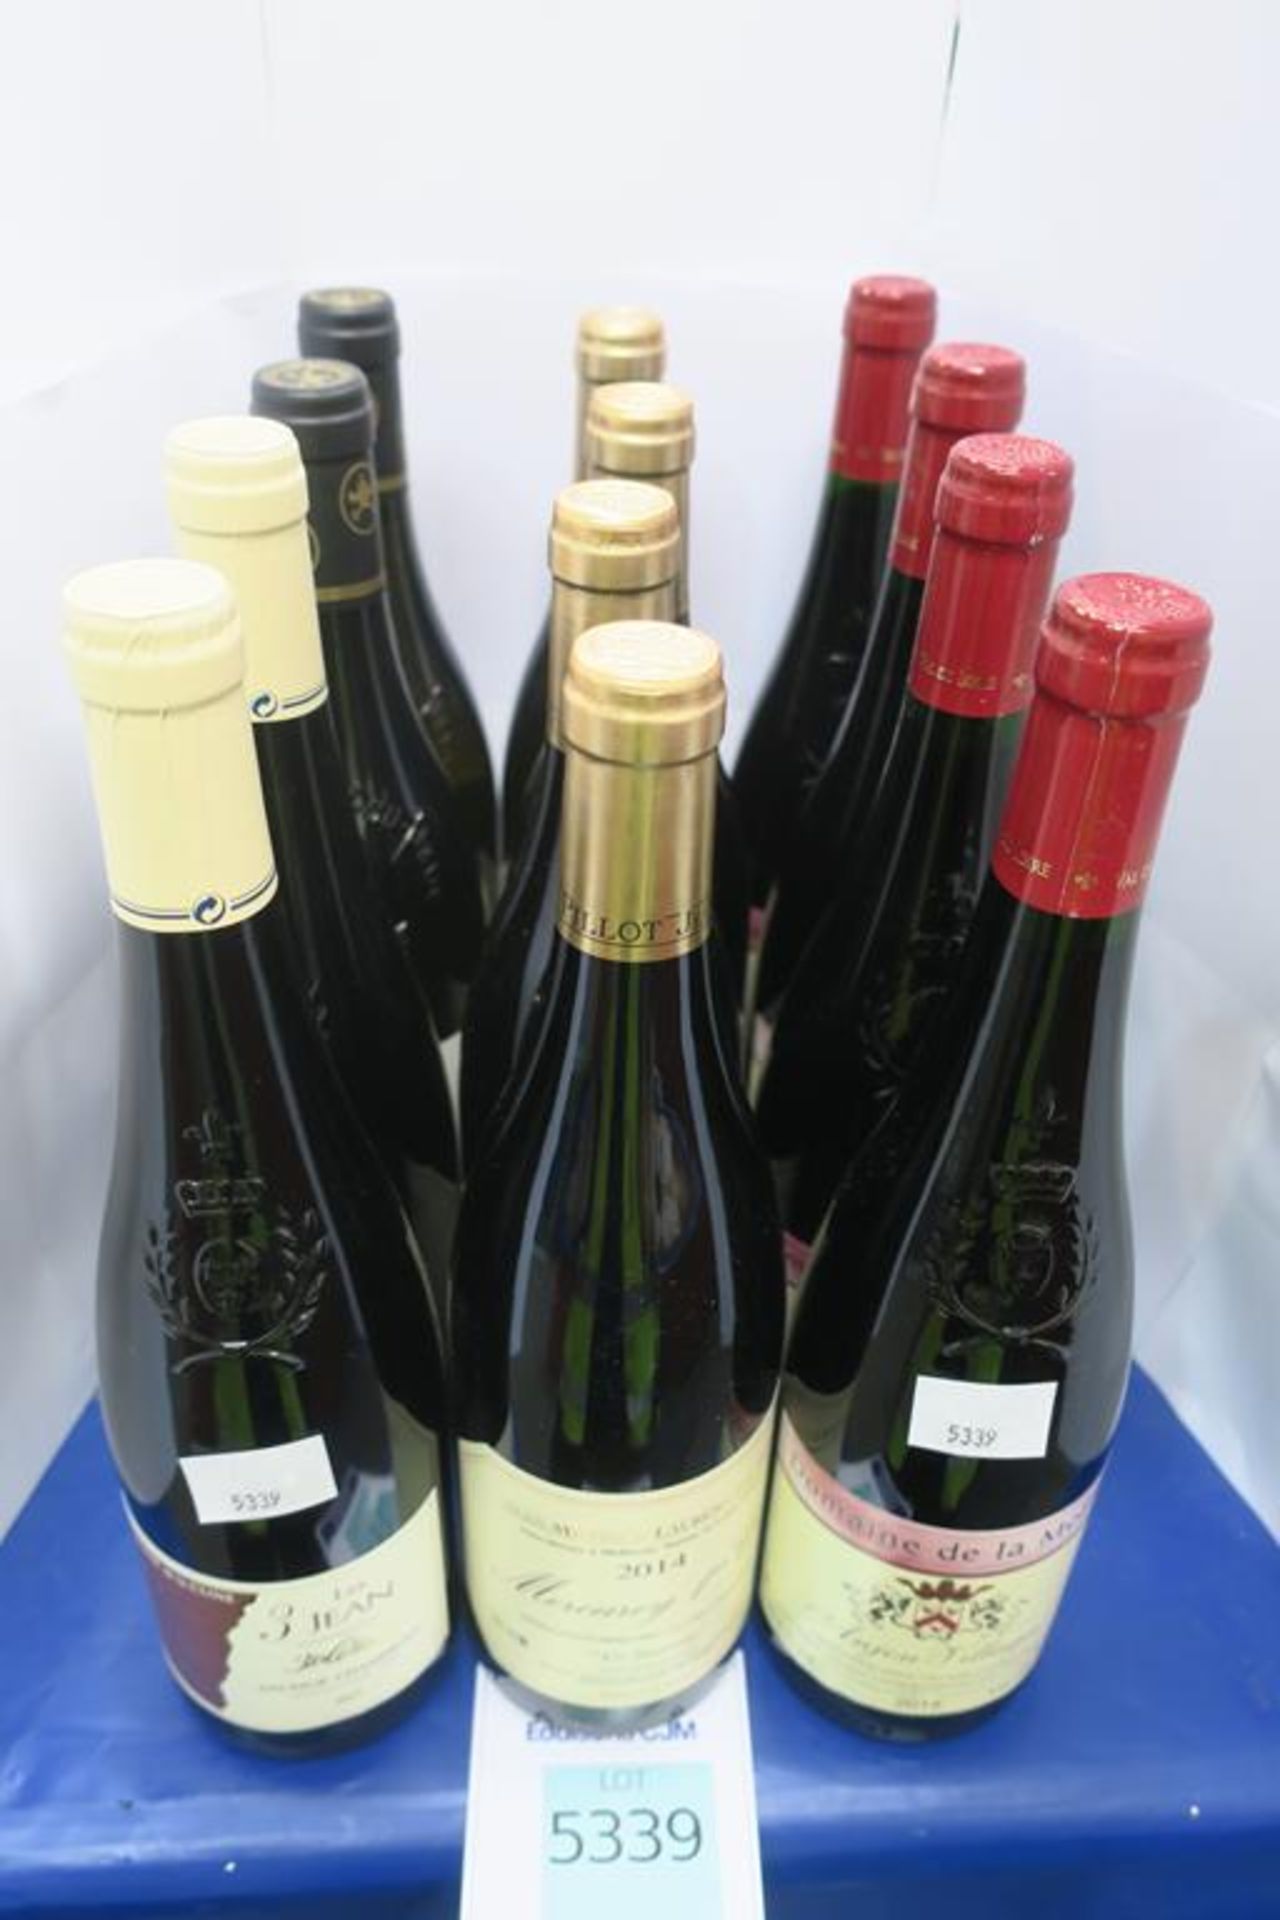 12 Bottles of Various Wines